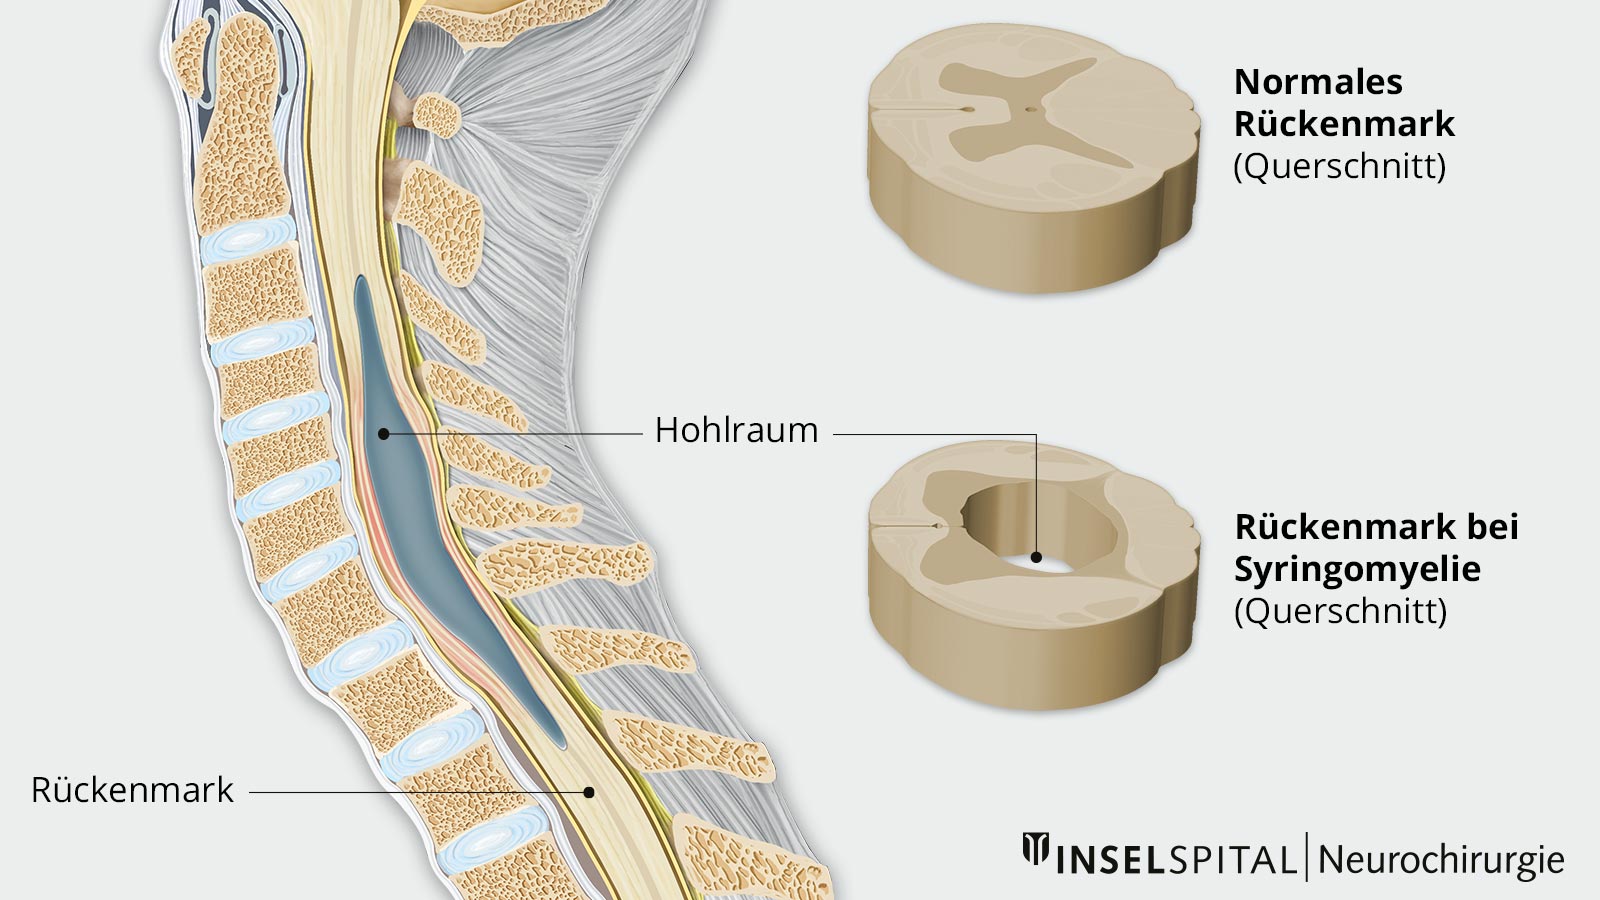 Zeichnung des Rückenmarks mit Hohlraum, der das Rückenmark verdrängt. Detailzeichnungen von normalen Rückenmark und Rückenmark bei Syringomyelia im Querschnitt.